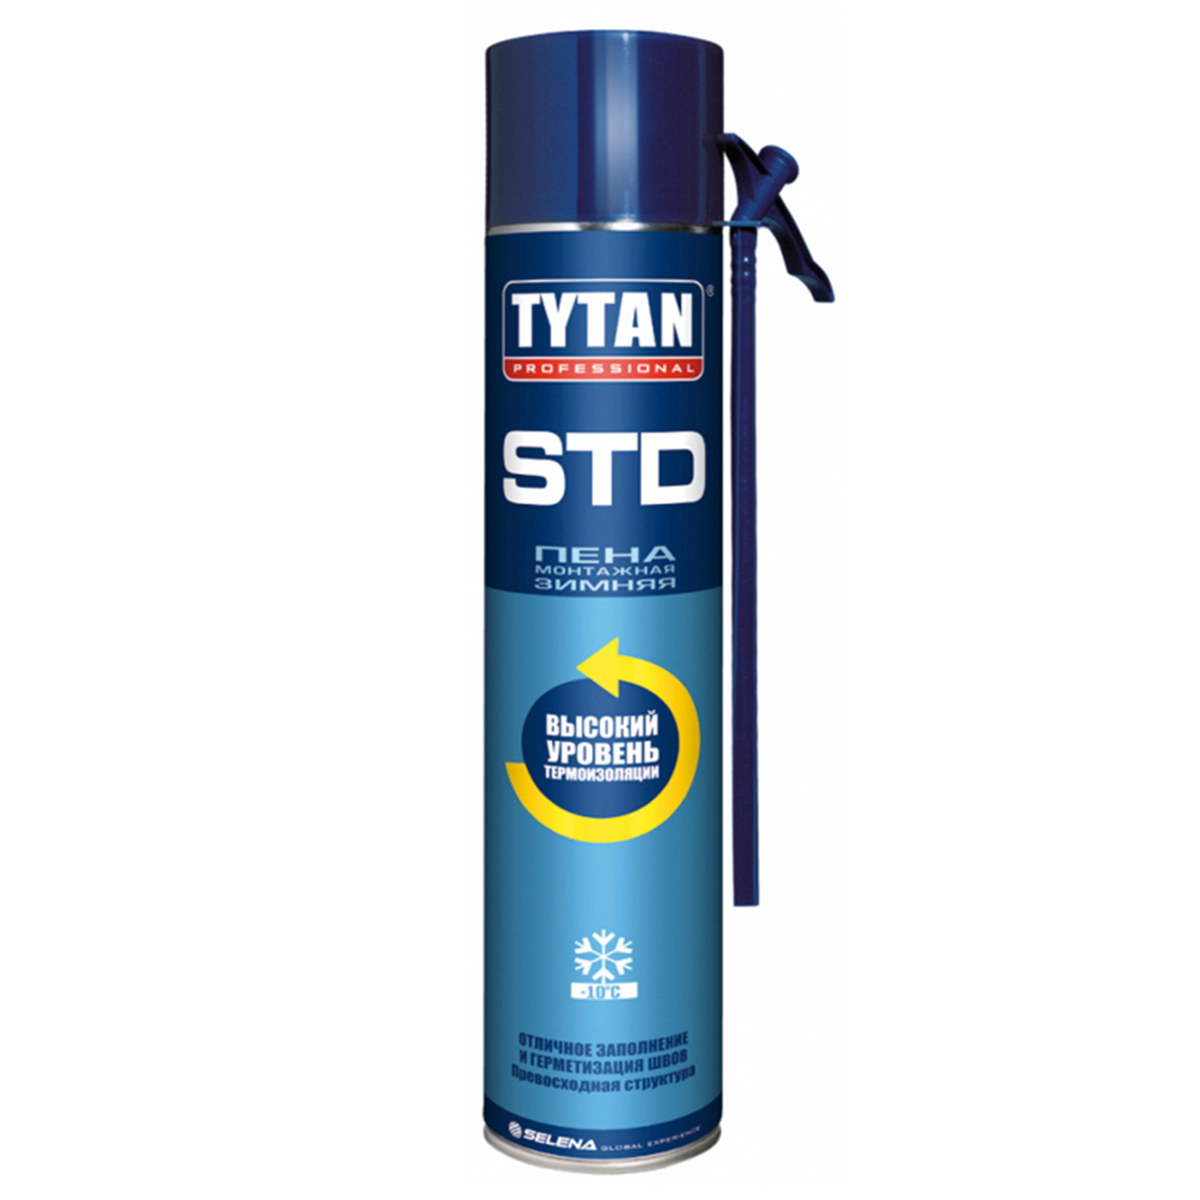 TYTAN Professional STD   